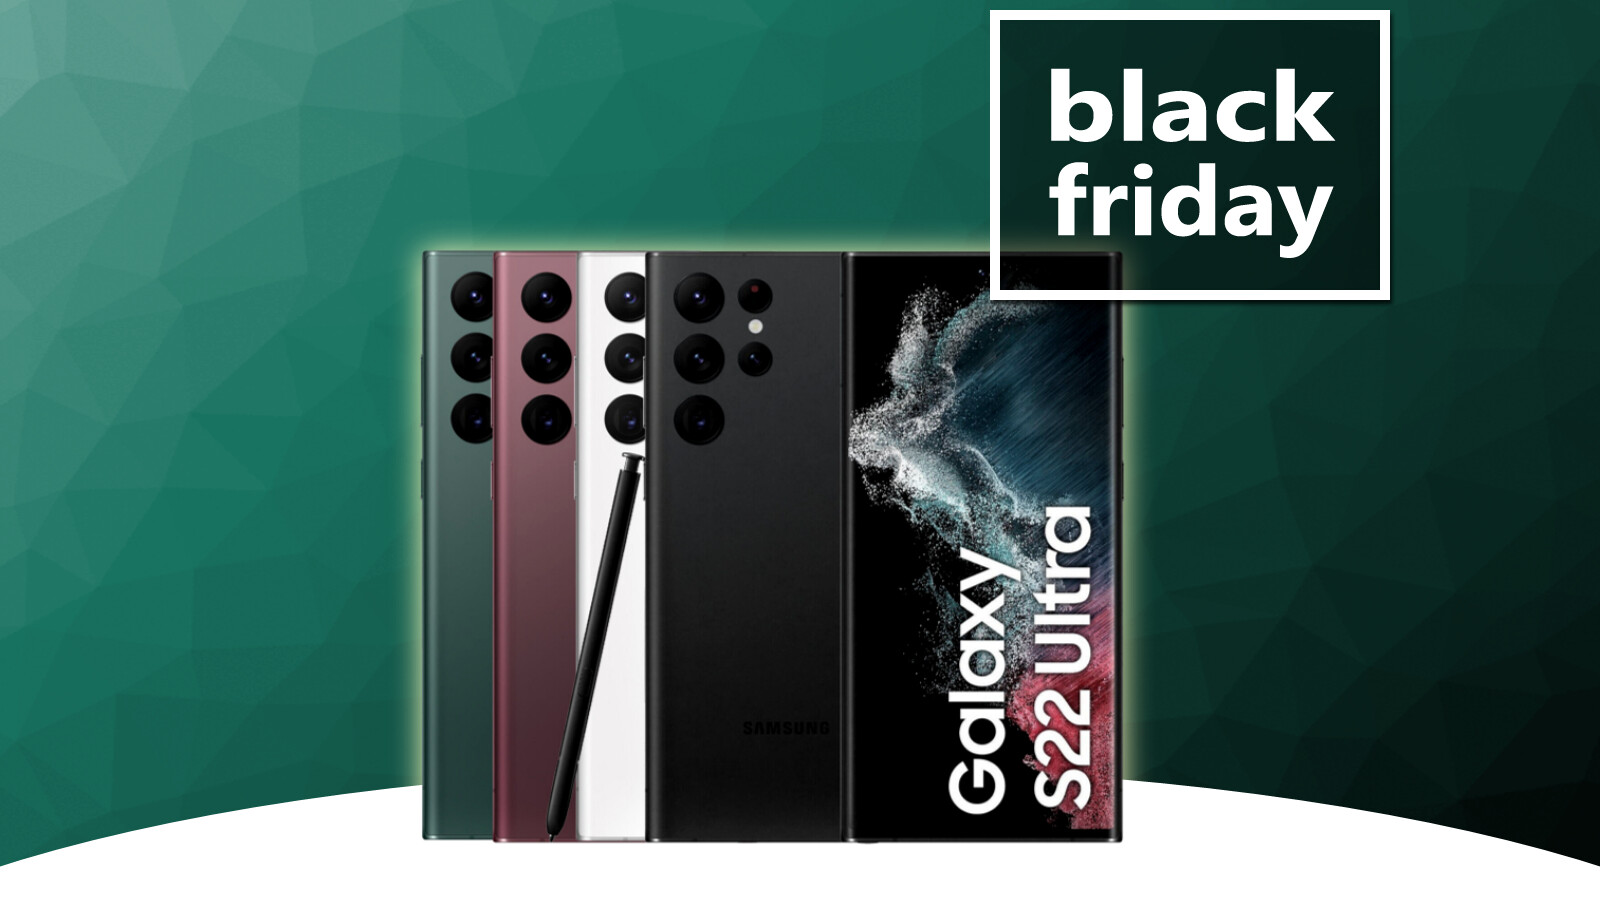 Galaxy S22 Ultra en oferta de Black Friday desde 830 euros: Samsung ofrece el mejor smartphone a muy buen precio